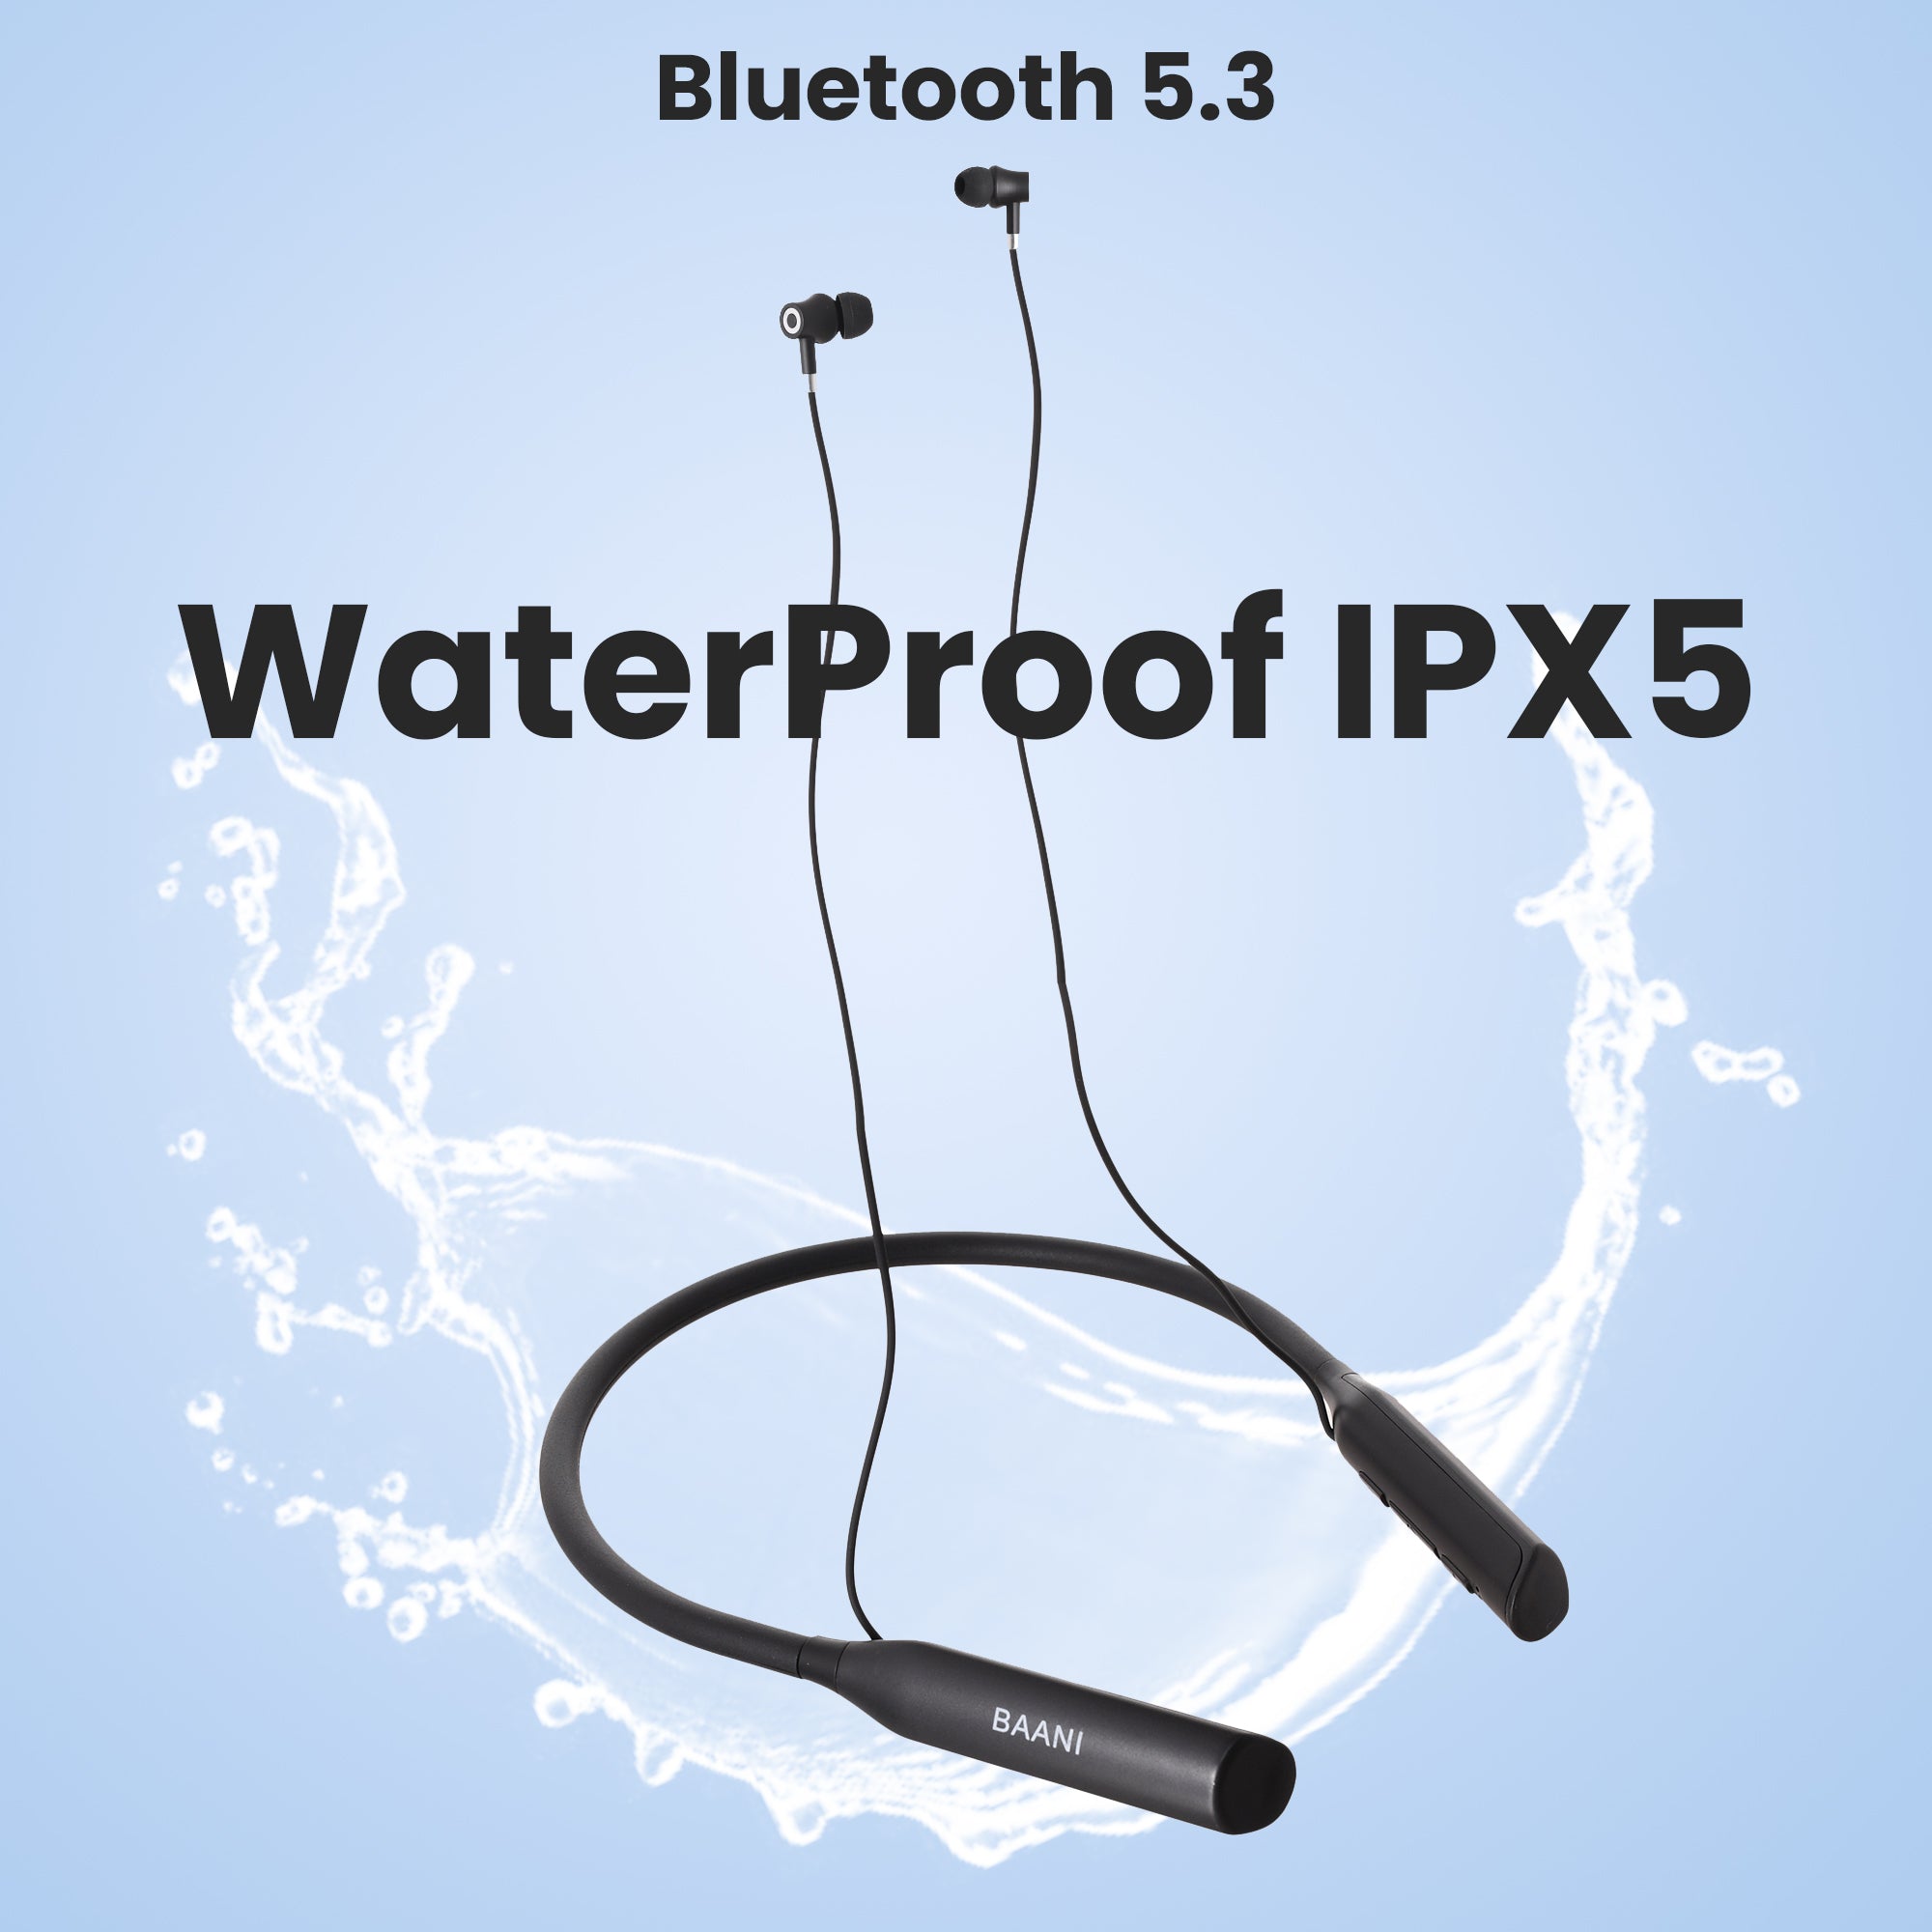 Waterproof feature of BN 206 Pro neckbands